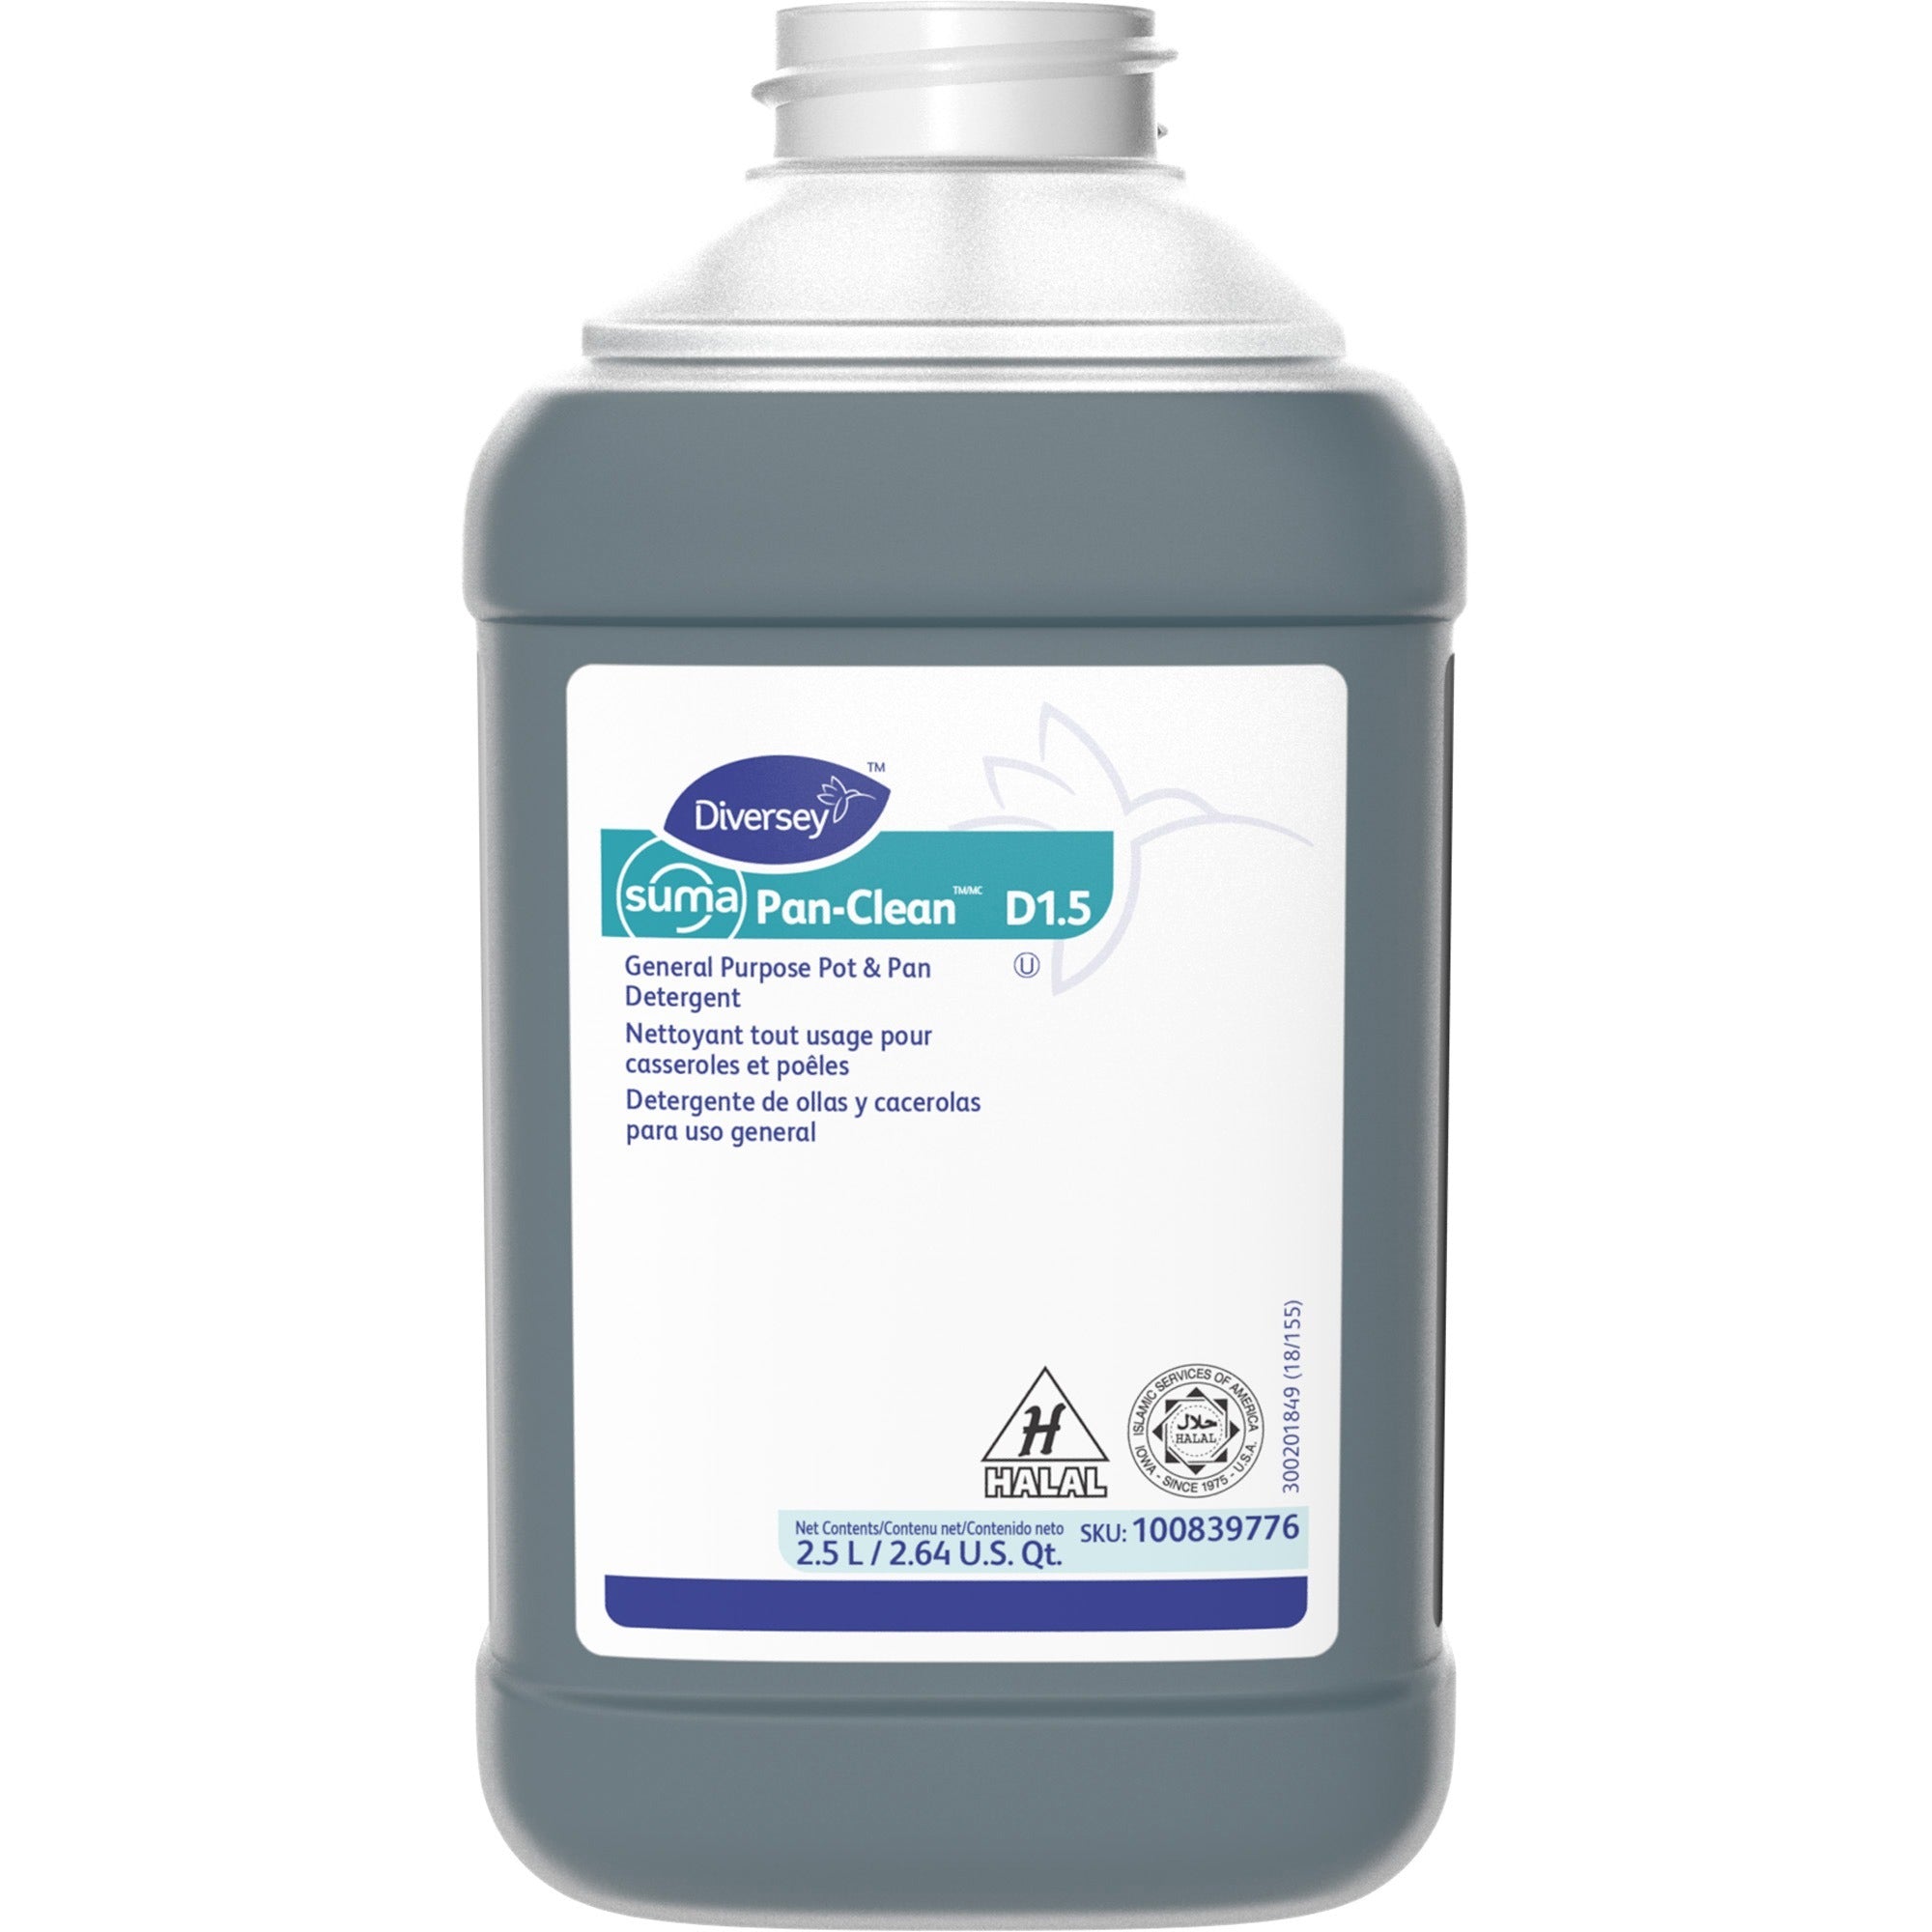 Diversey Suma Pan-Clean D1.5 - Concentrate - 84.5 fl oz (2.6 quart) - Floral ScentBottle - 2 / Carton - Non-corrosive, Long Lasting - Blue - 1